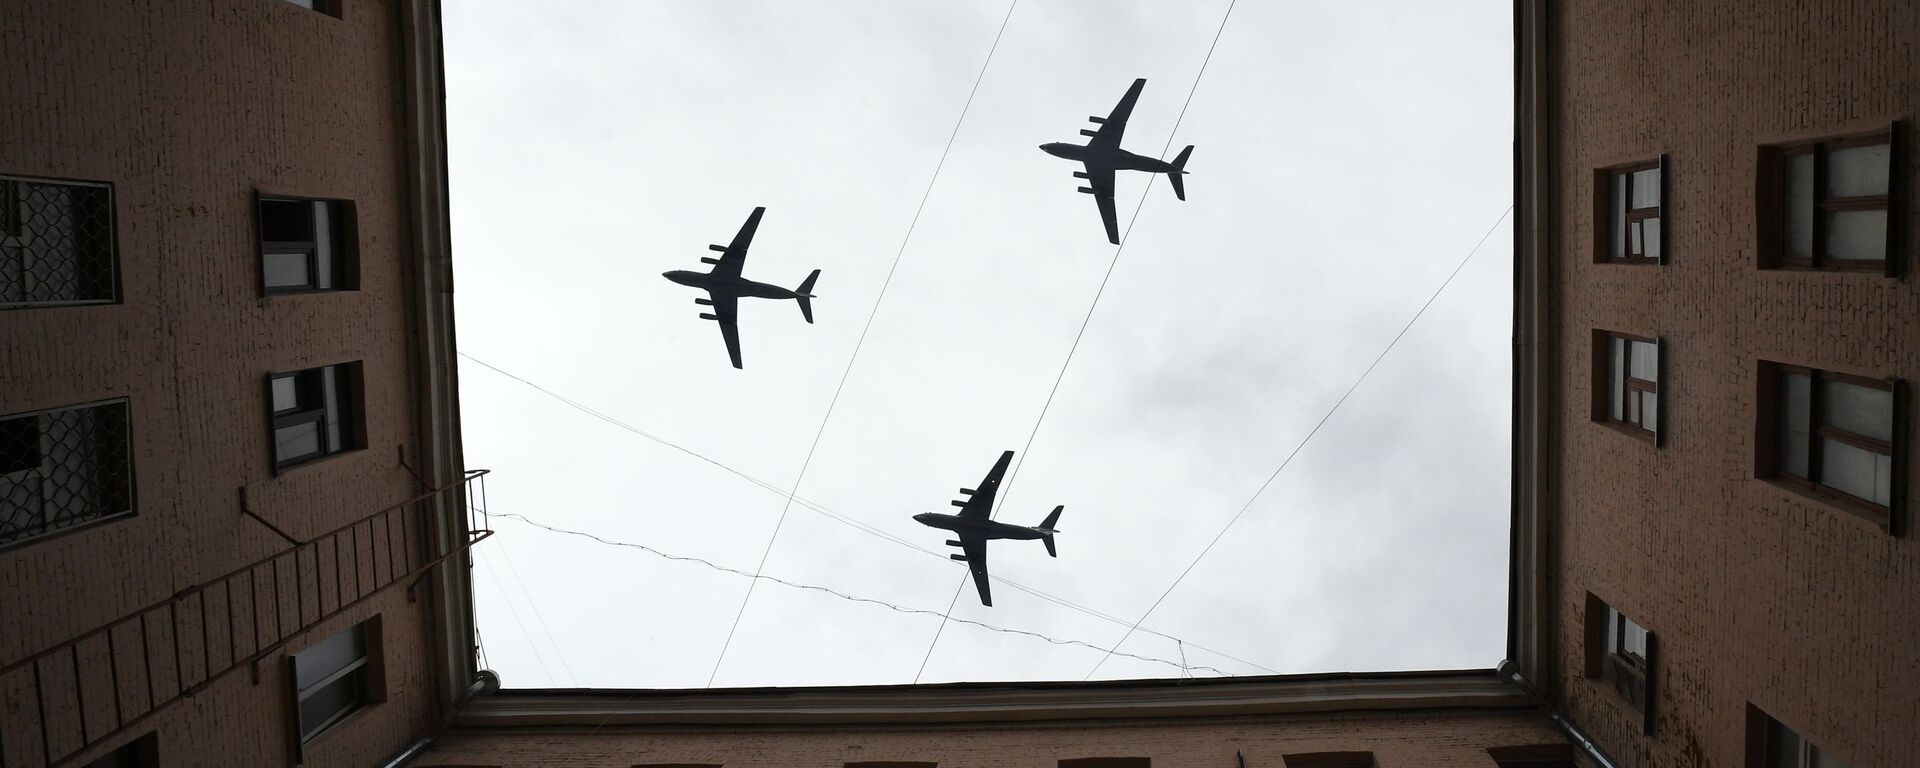 Тяжелые транспортные самолеты Ил-76 на репетиции воздушной части парада Победы в Москве - Sputnik Ўзбекистон, 1920, 28.07.2021